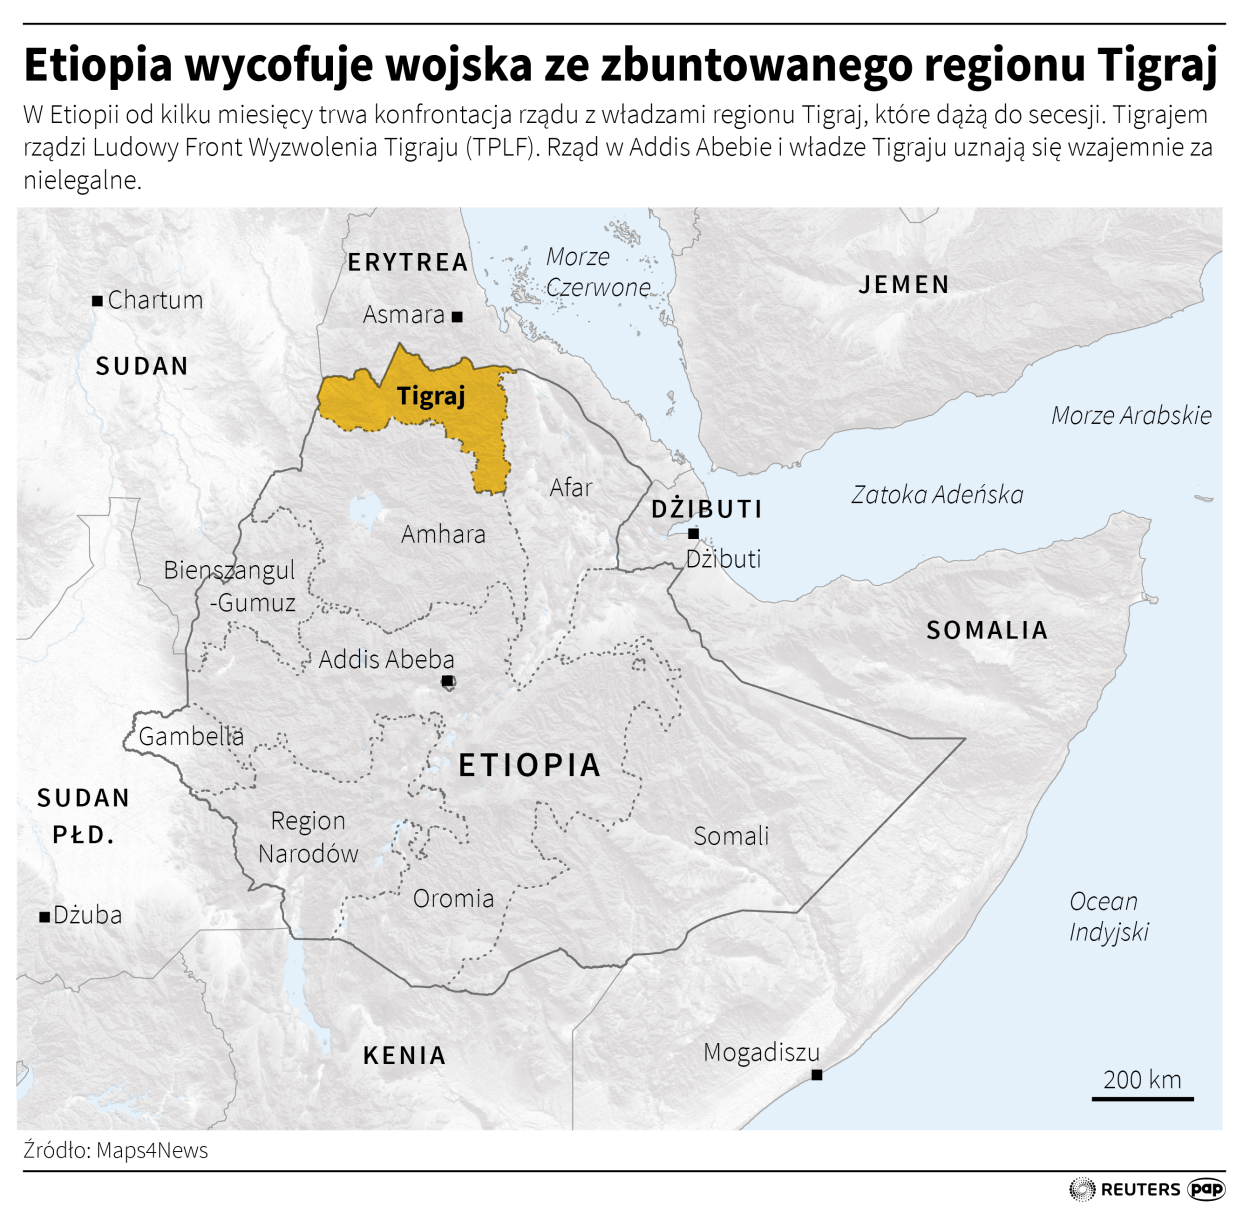 Etiopia wycofuje wojska ze zbuntowanego regionu Tigraj Autor Adam Ziemienowicz